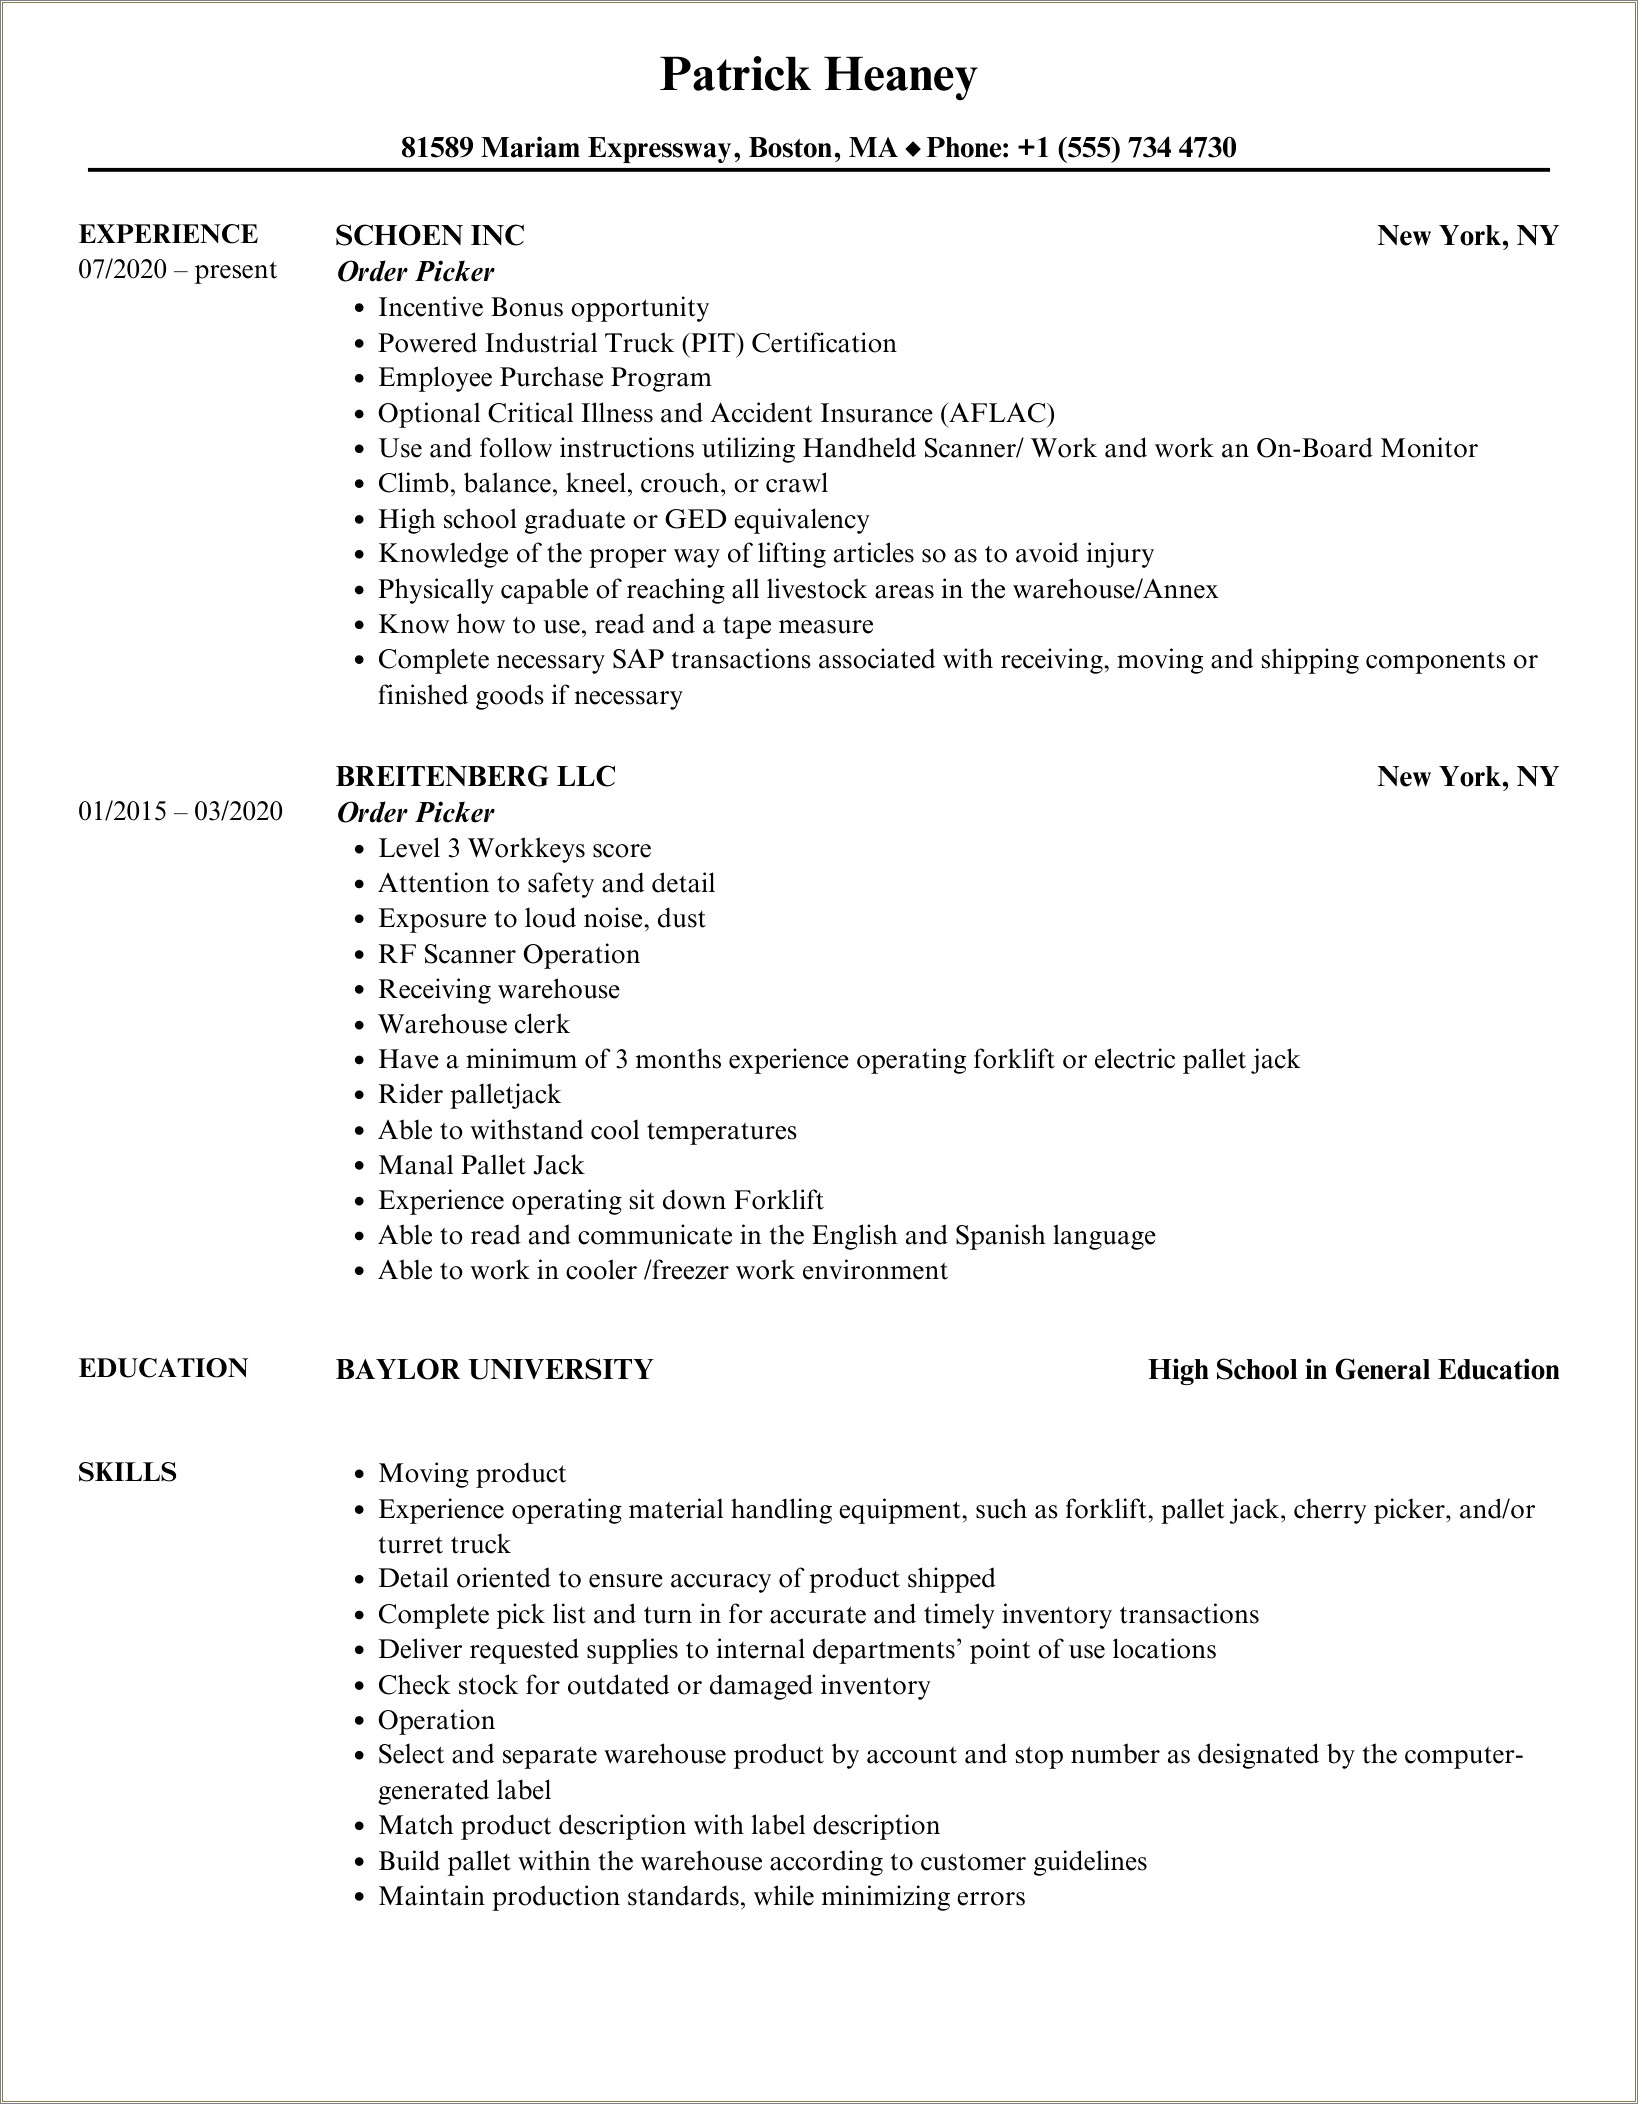 Manual Order Picker Job Description Resume